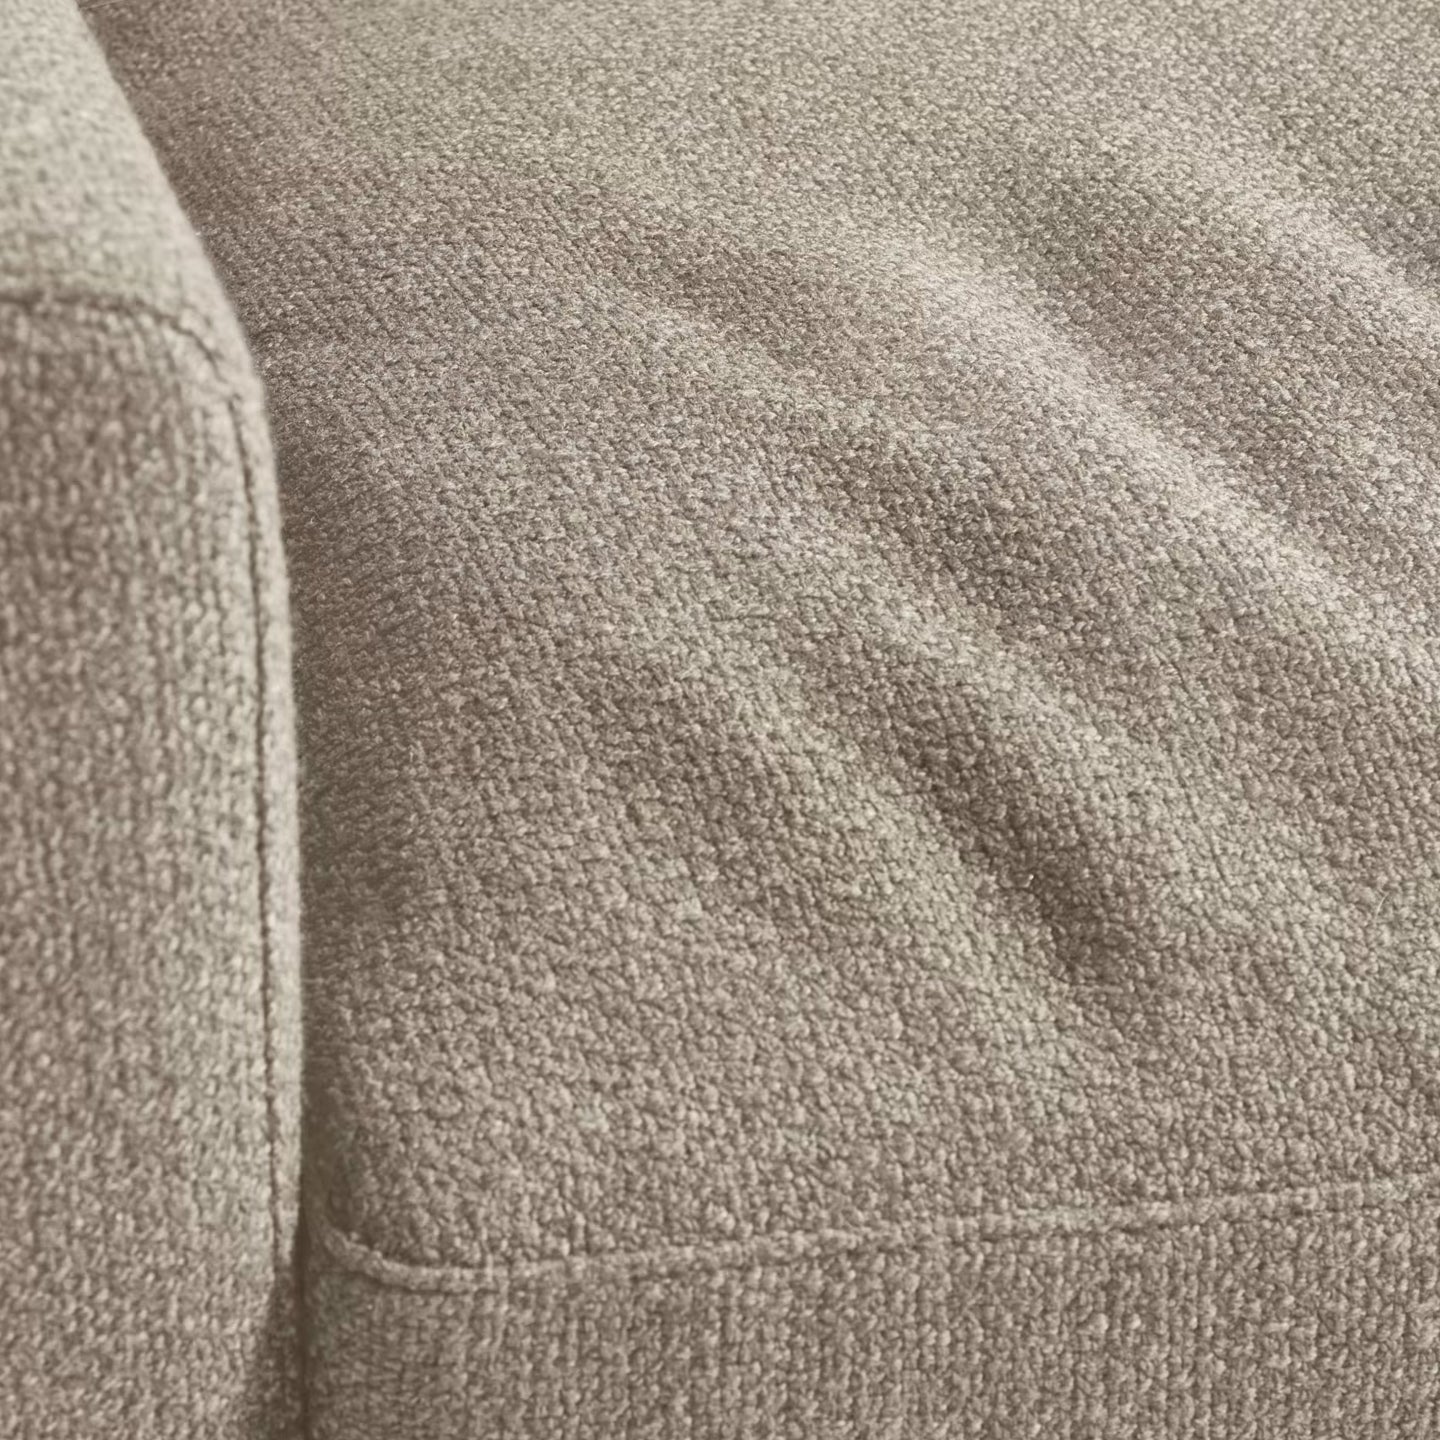 Kave Home Noa 3-Sitzer Sofa mit Kissen beige und Beine mit dunklem Finish - SKU#S708GC12